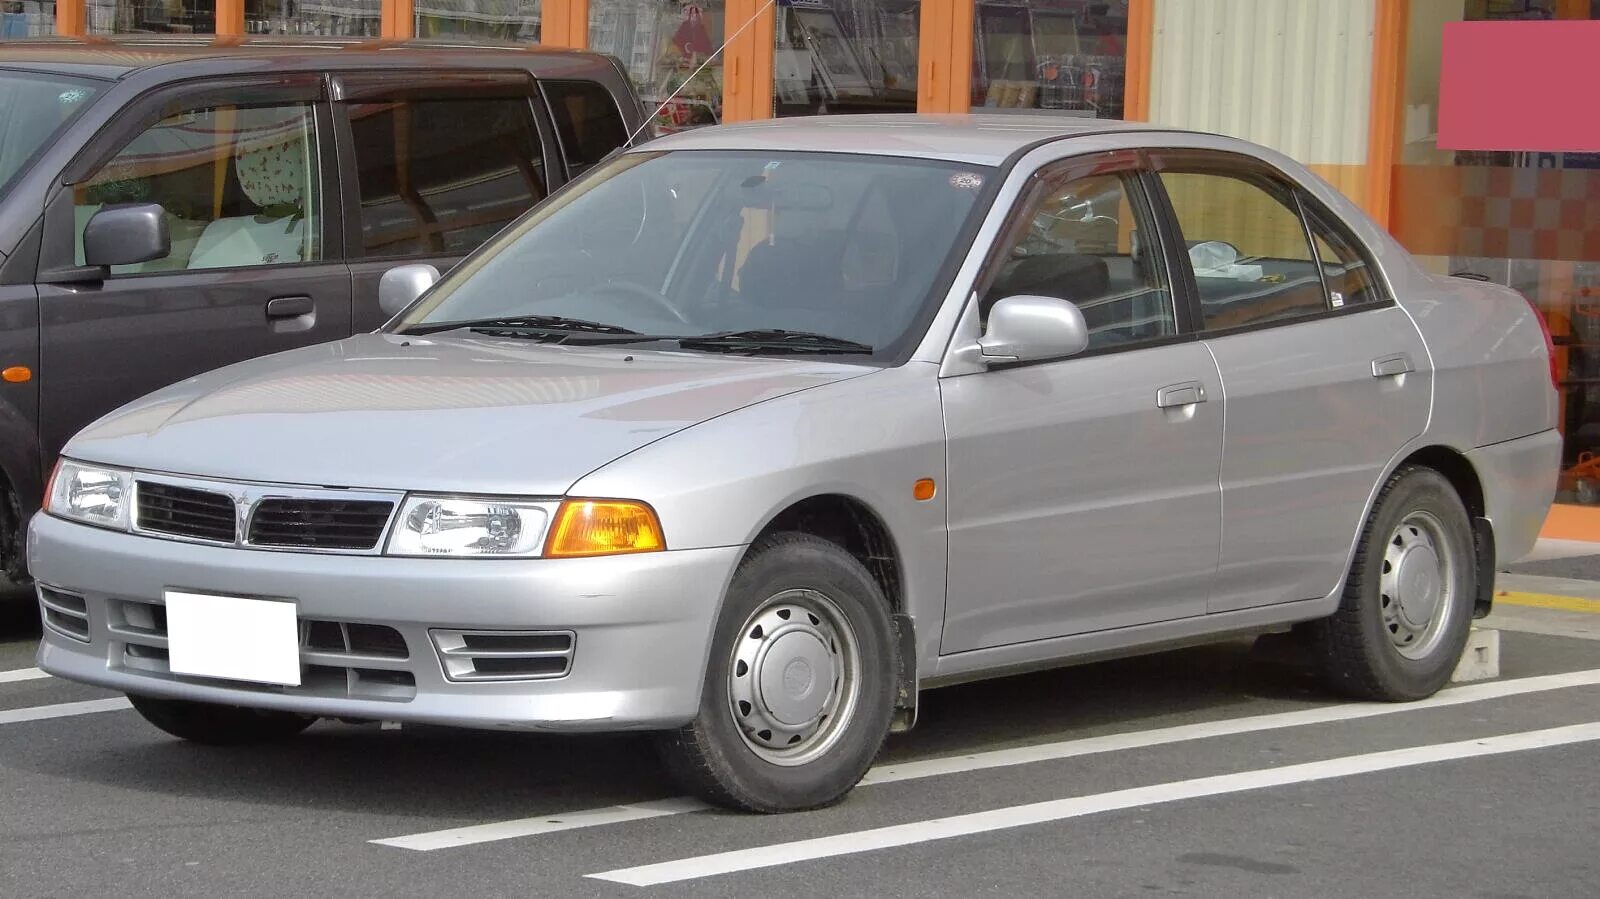 Митсубиси первого поколения. Митсубиси Лансер 6 поколения. Mitsubishi Lancer 1 поколение. Митсубиси Мираж 1995 седан. Mitsubishi Lancer VII 1995.